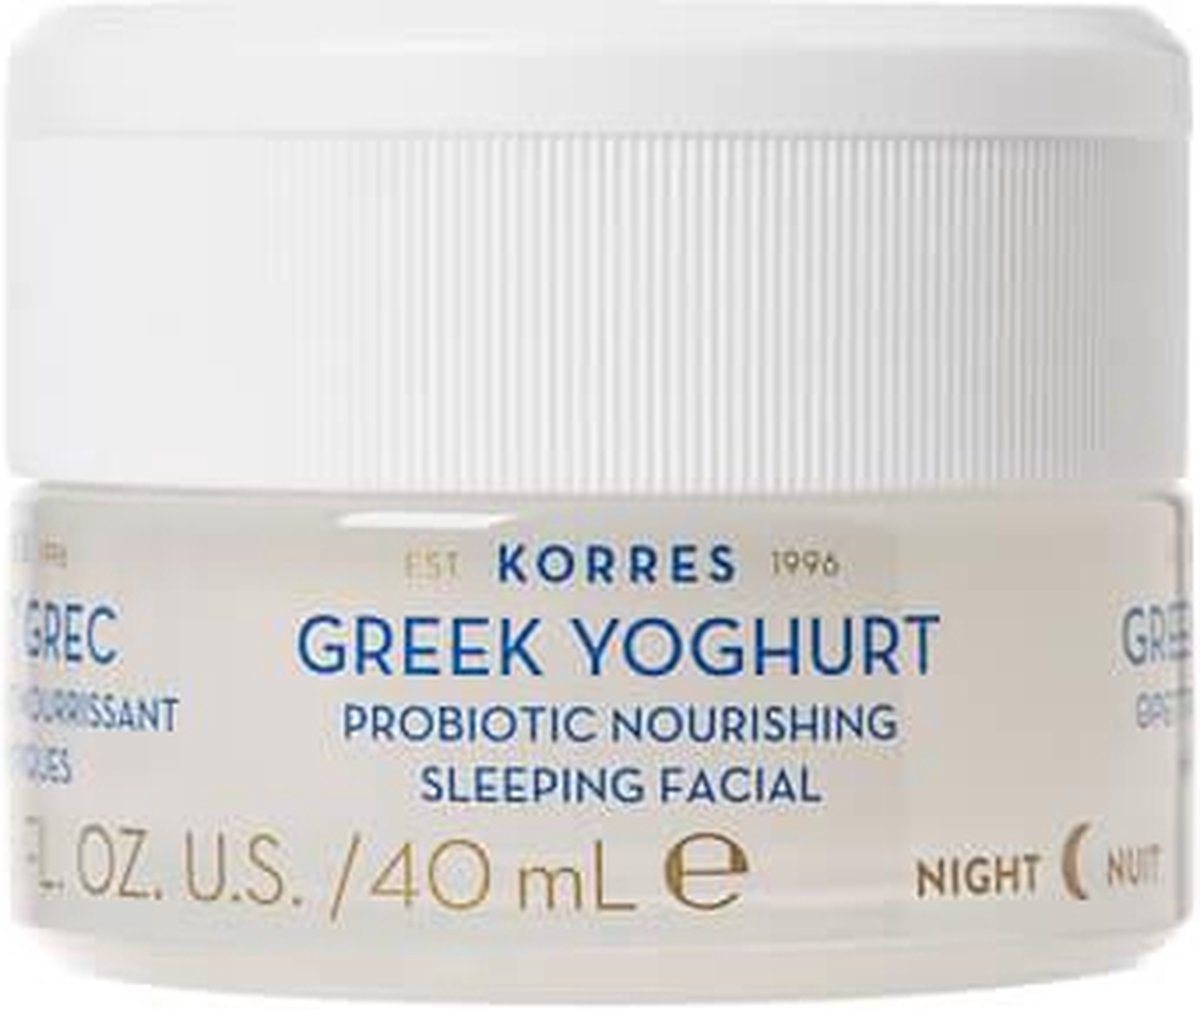 Korres - Greek Yoghurt Comforting Probiotic Nourishing Sleeping Facial - 40 ml